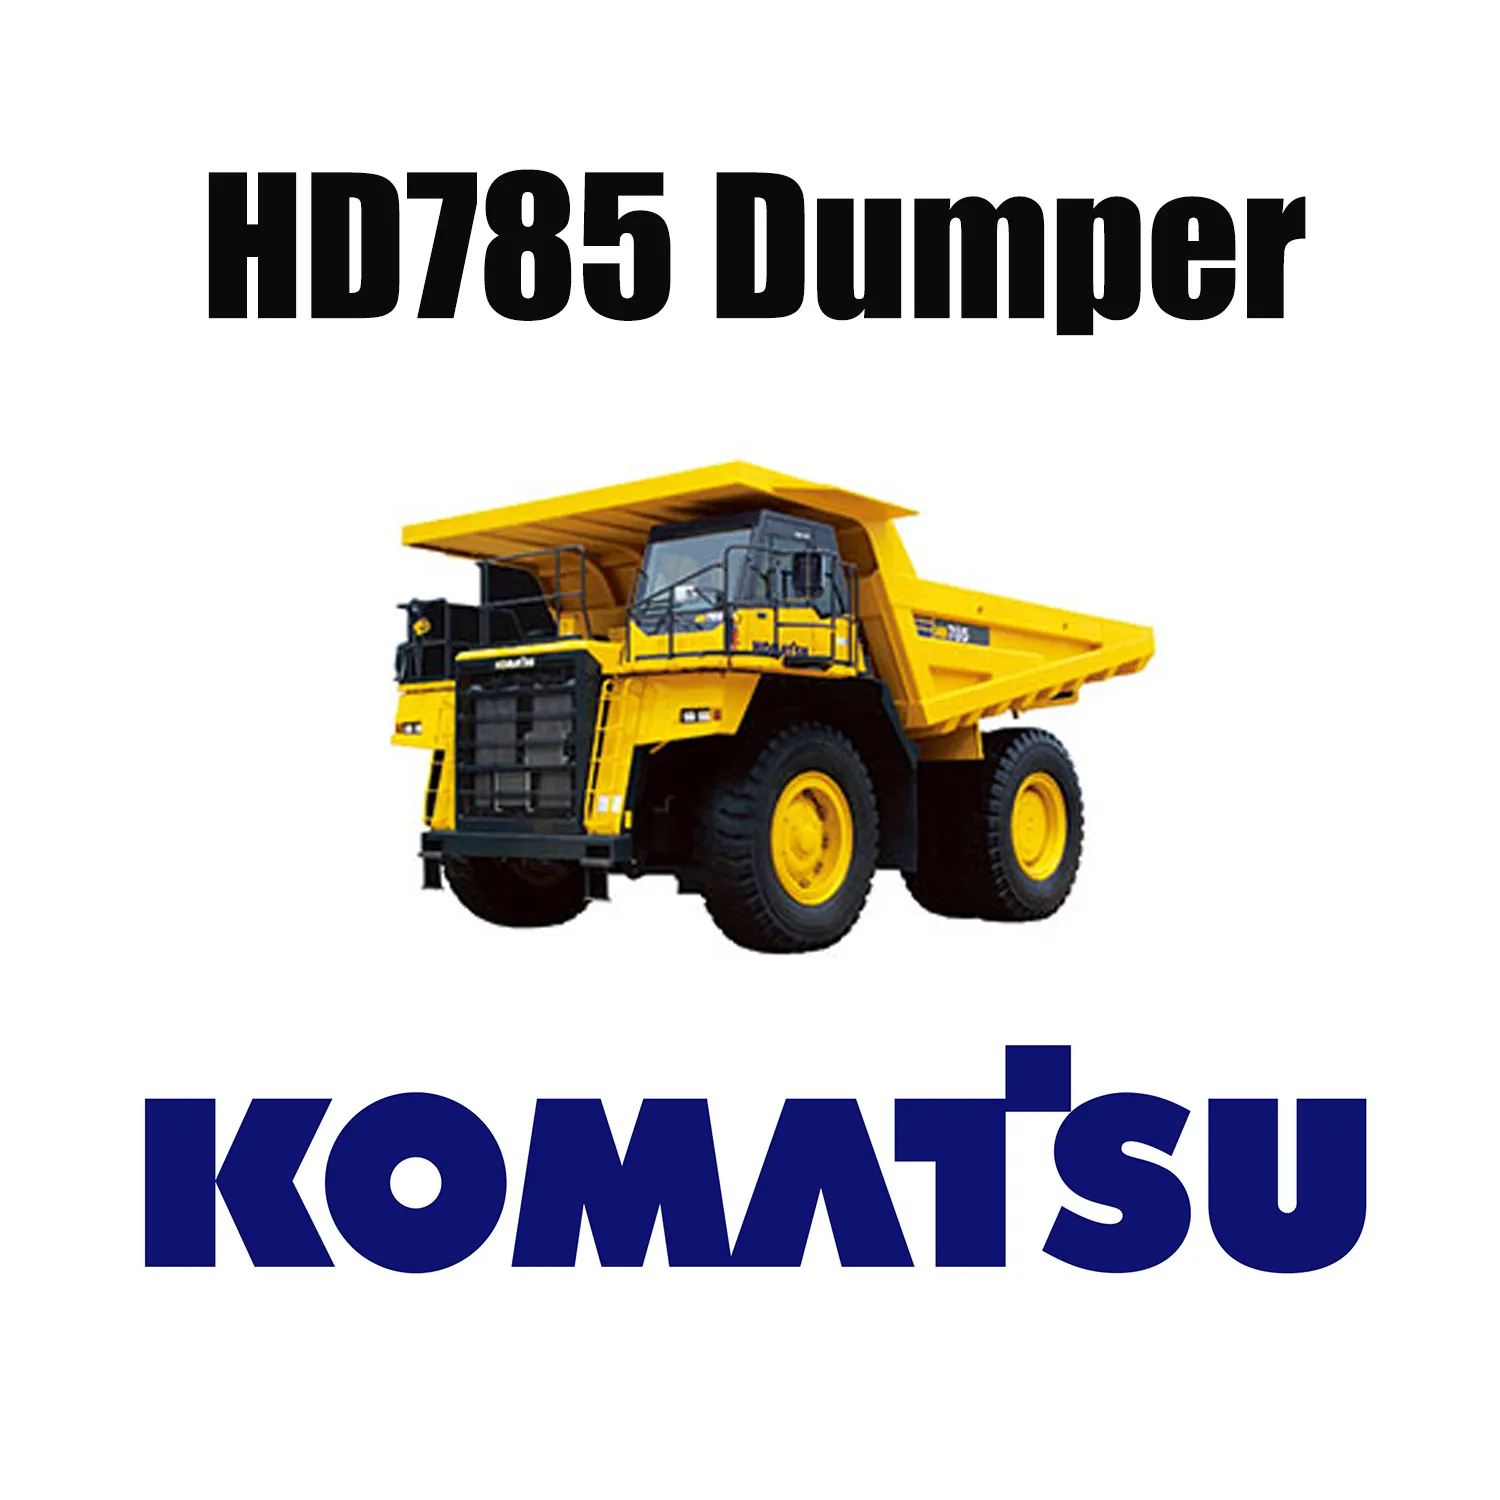 إطارات OTR الخاصة بالتعدين الصعبة 27.00R49 لشاحنة قلابة KOMATSU HD785